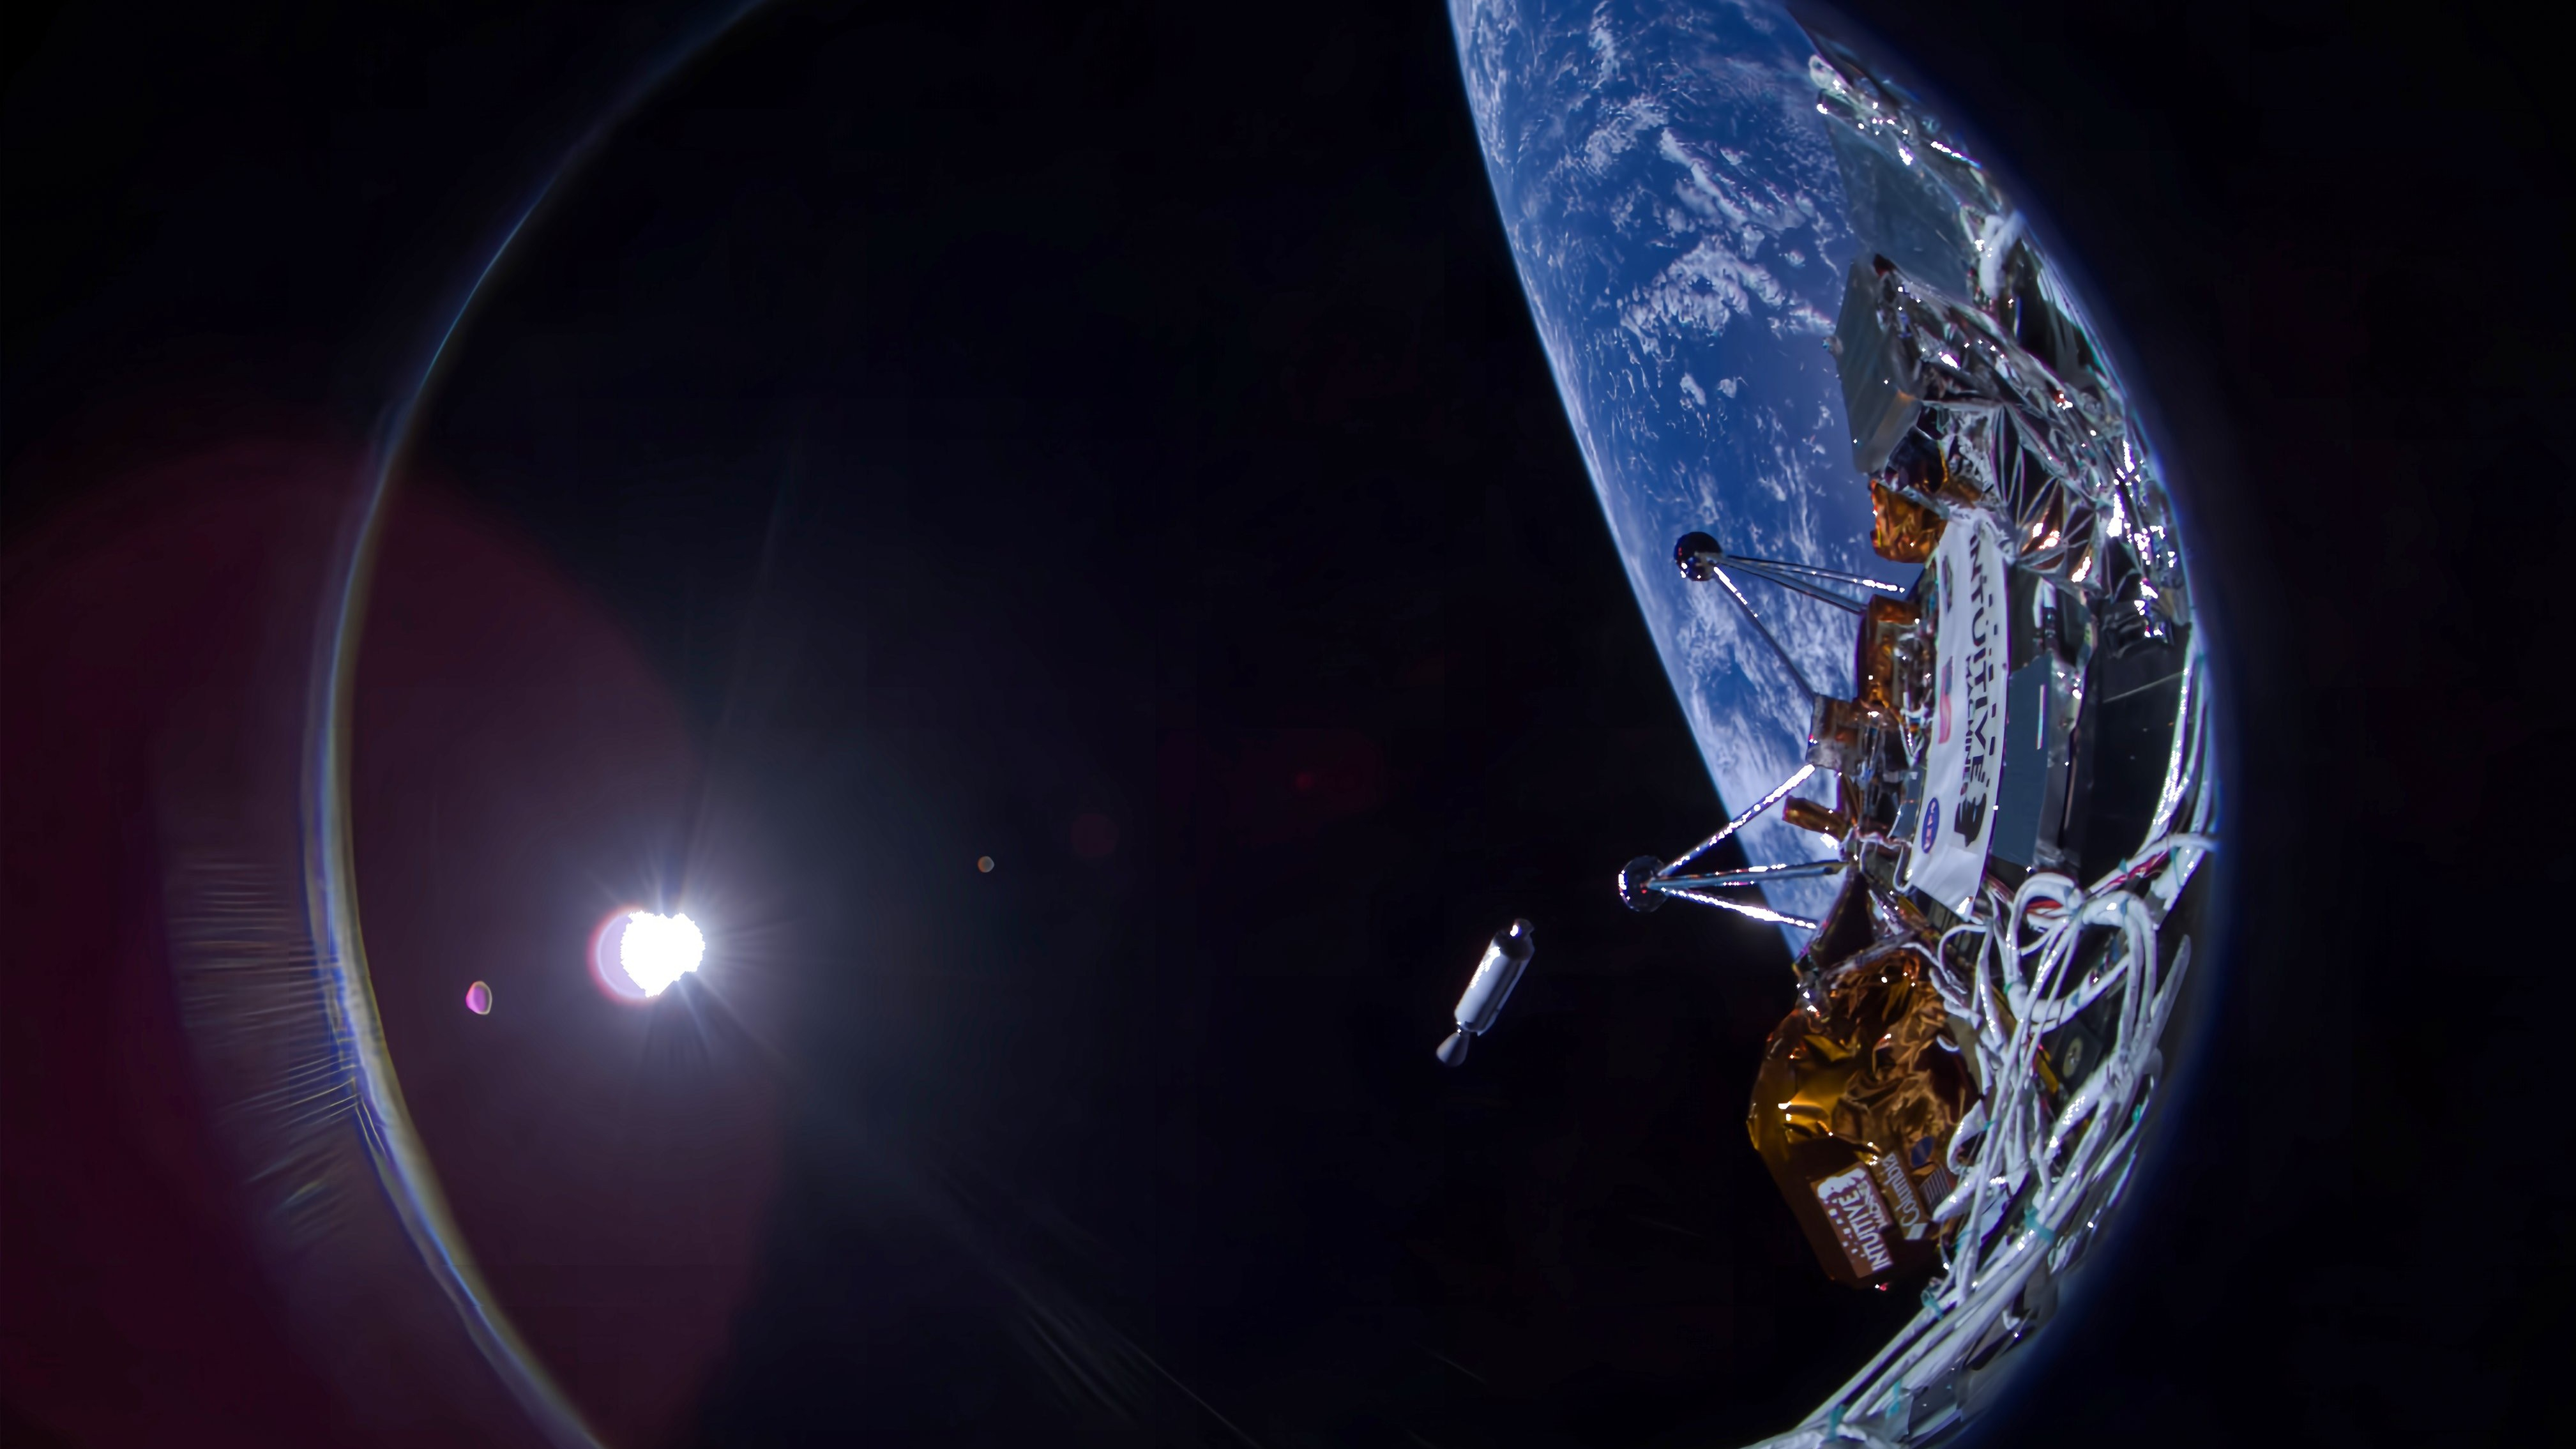 لقطة مقرّبة لصورة شخصية لمركبة فضائية تُظهر مكونات مغلفة باللونين الرمادي والذهبي، مع منحنى الأرض والشمس البعيدة في الخلفية.